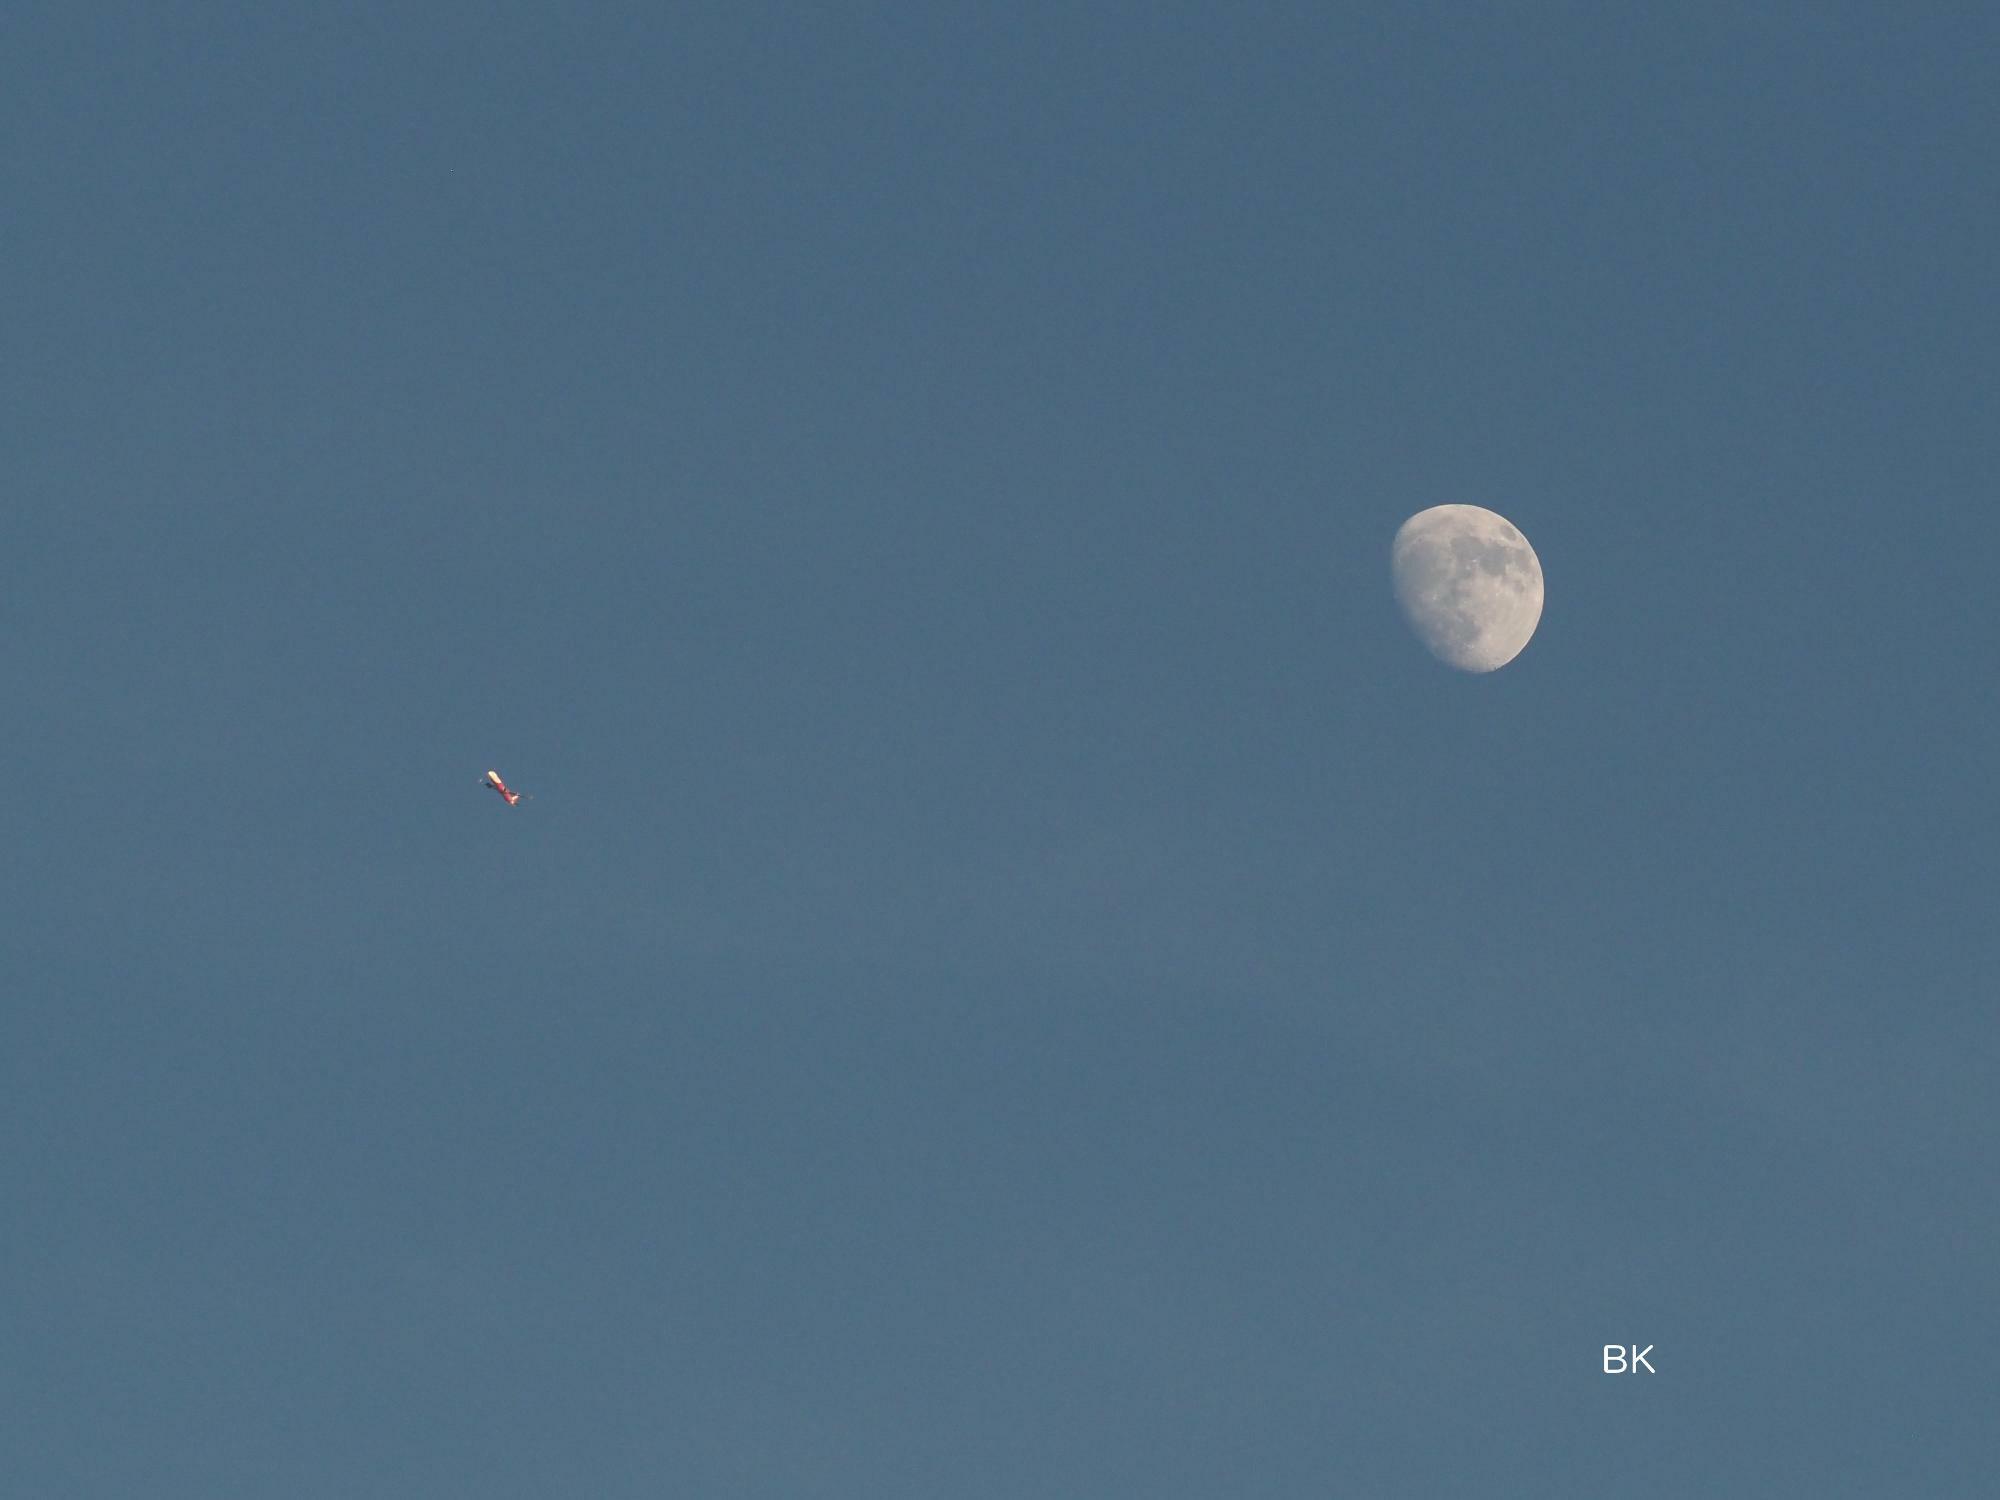 タイミングよければ月と飛行機が重なるシーンを見ることも。